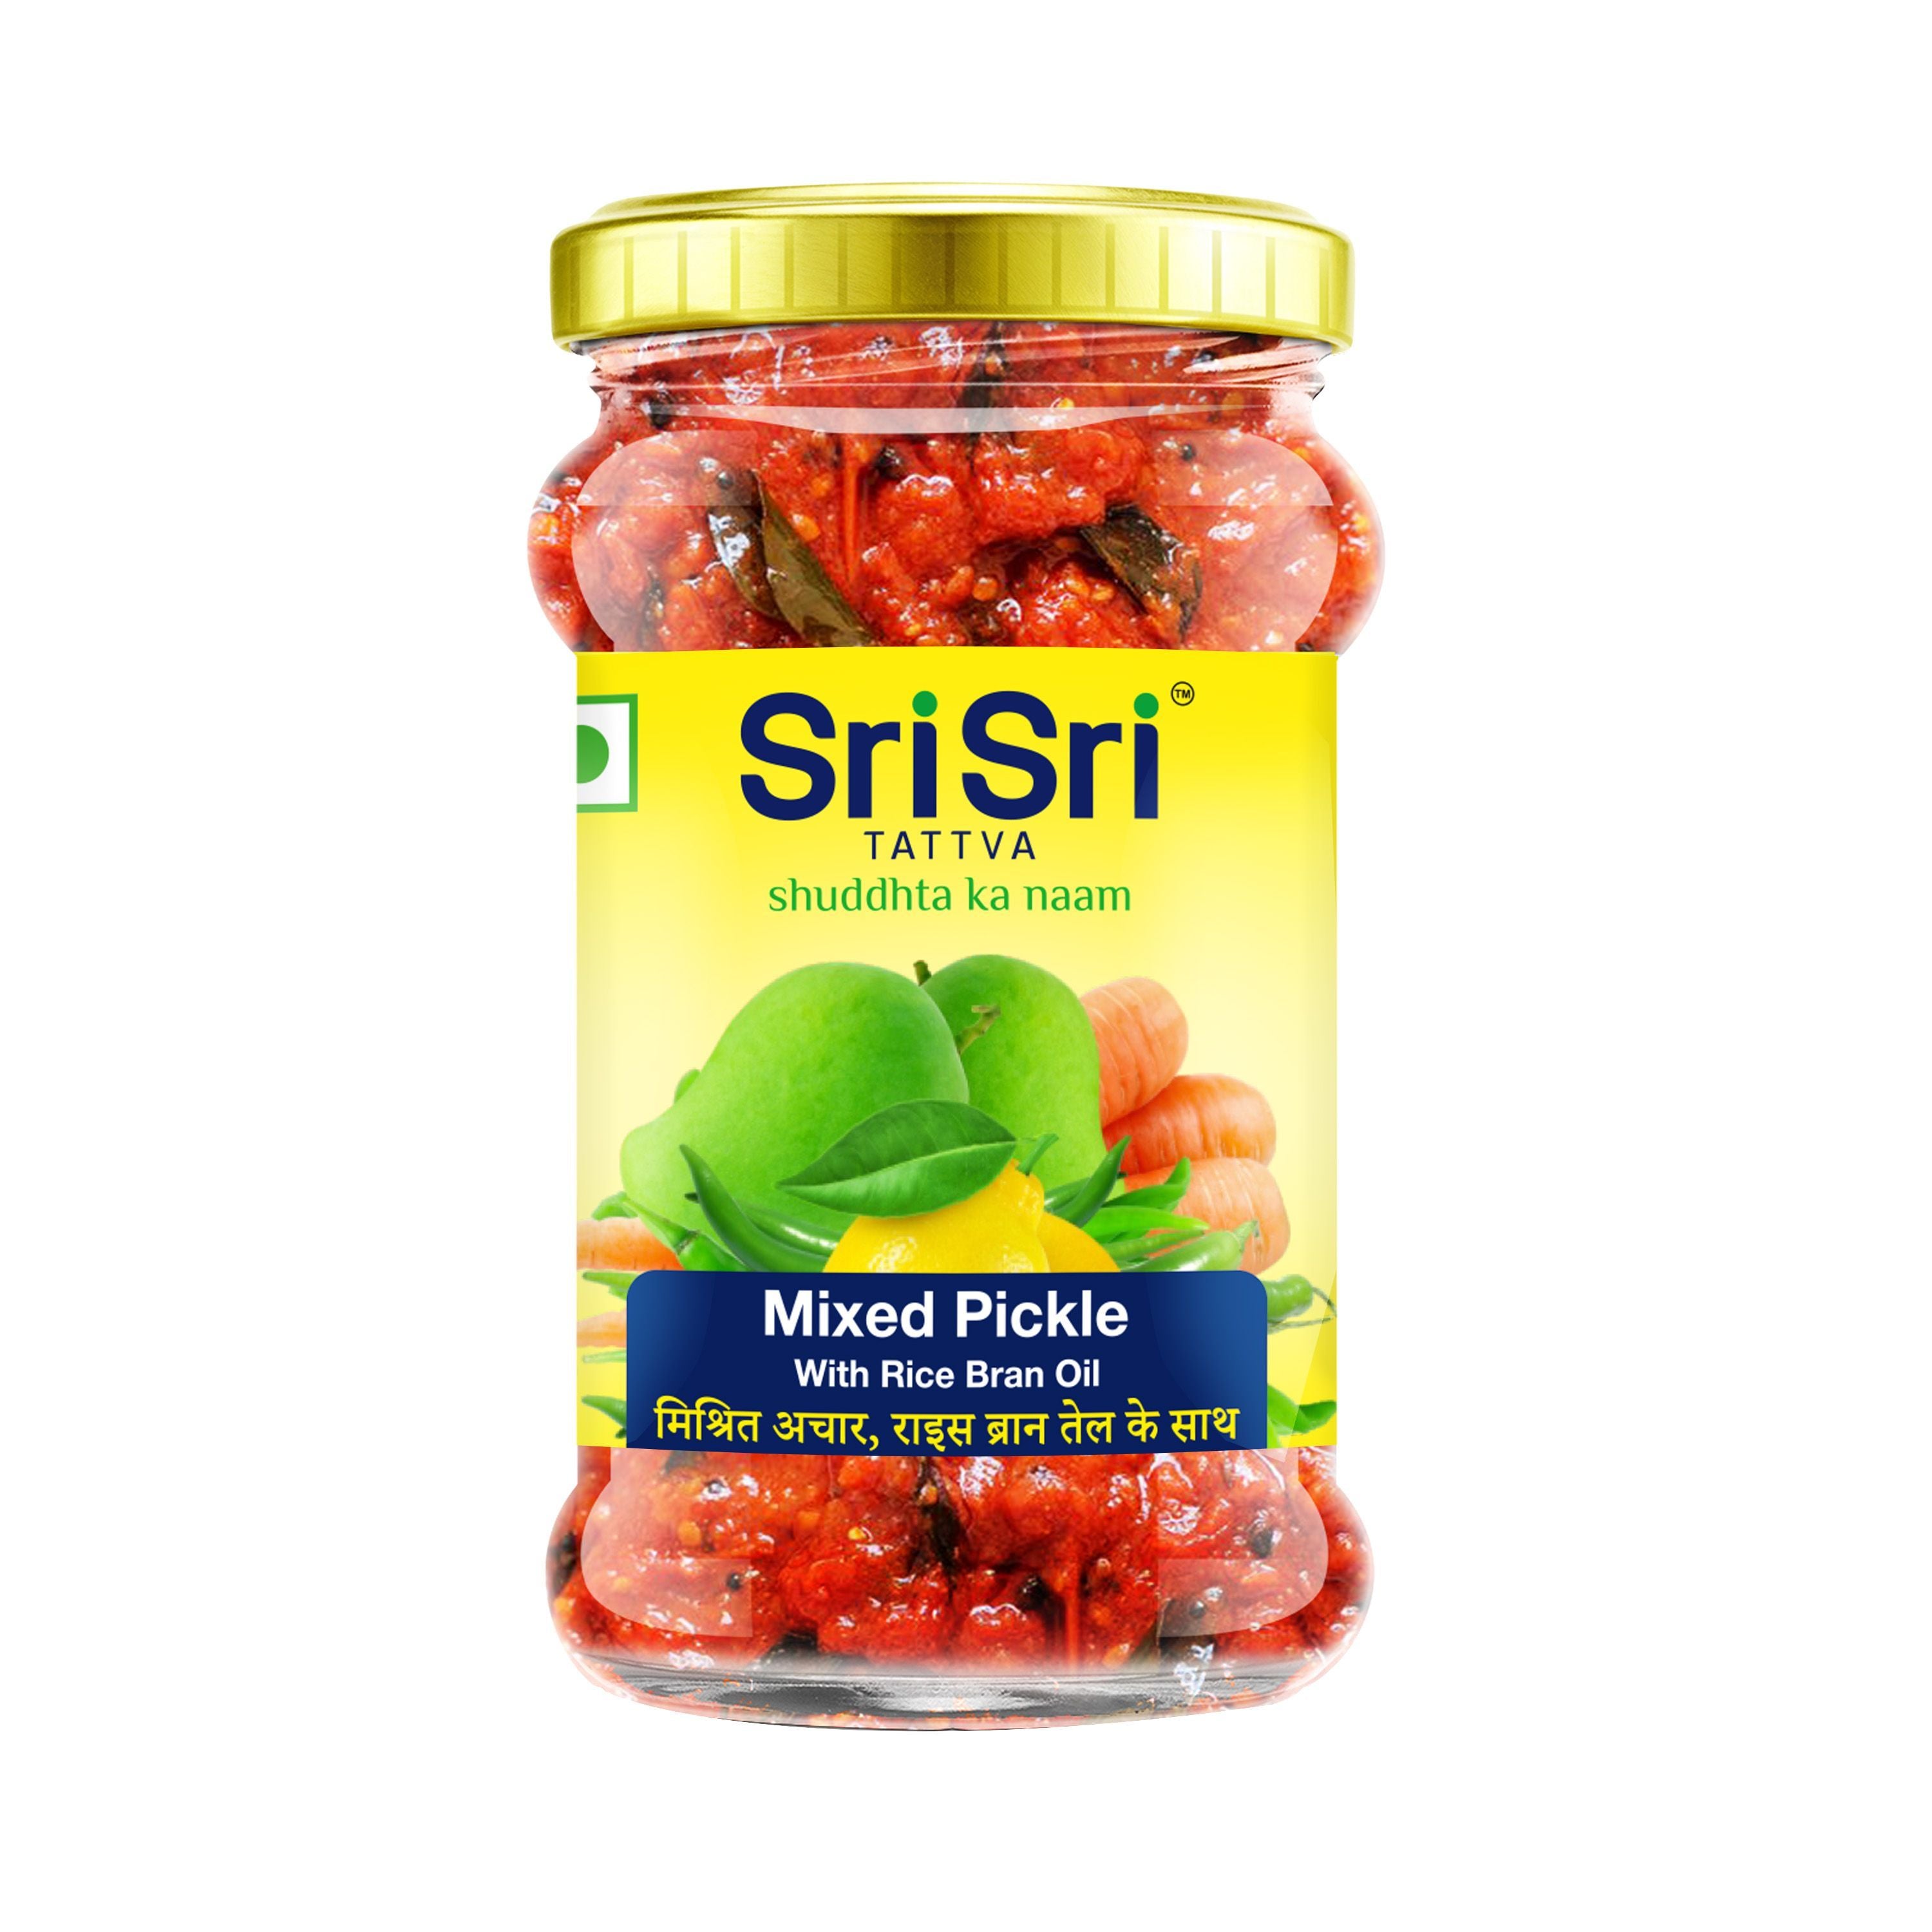 Mixed Pickle - Rice Bran Oil, 300g - Sri Sri Tattva